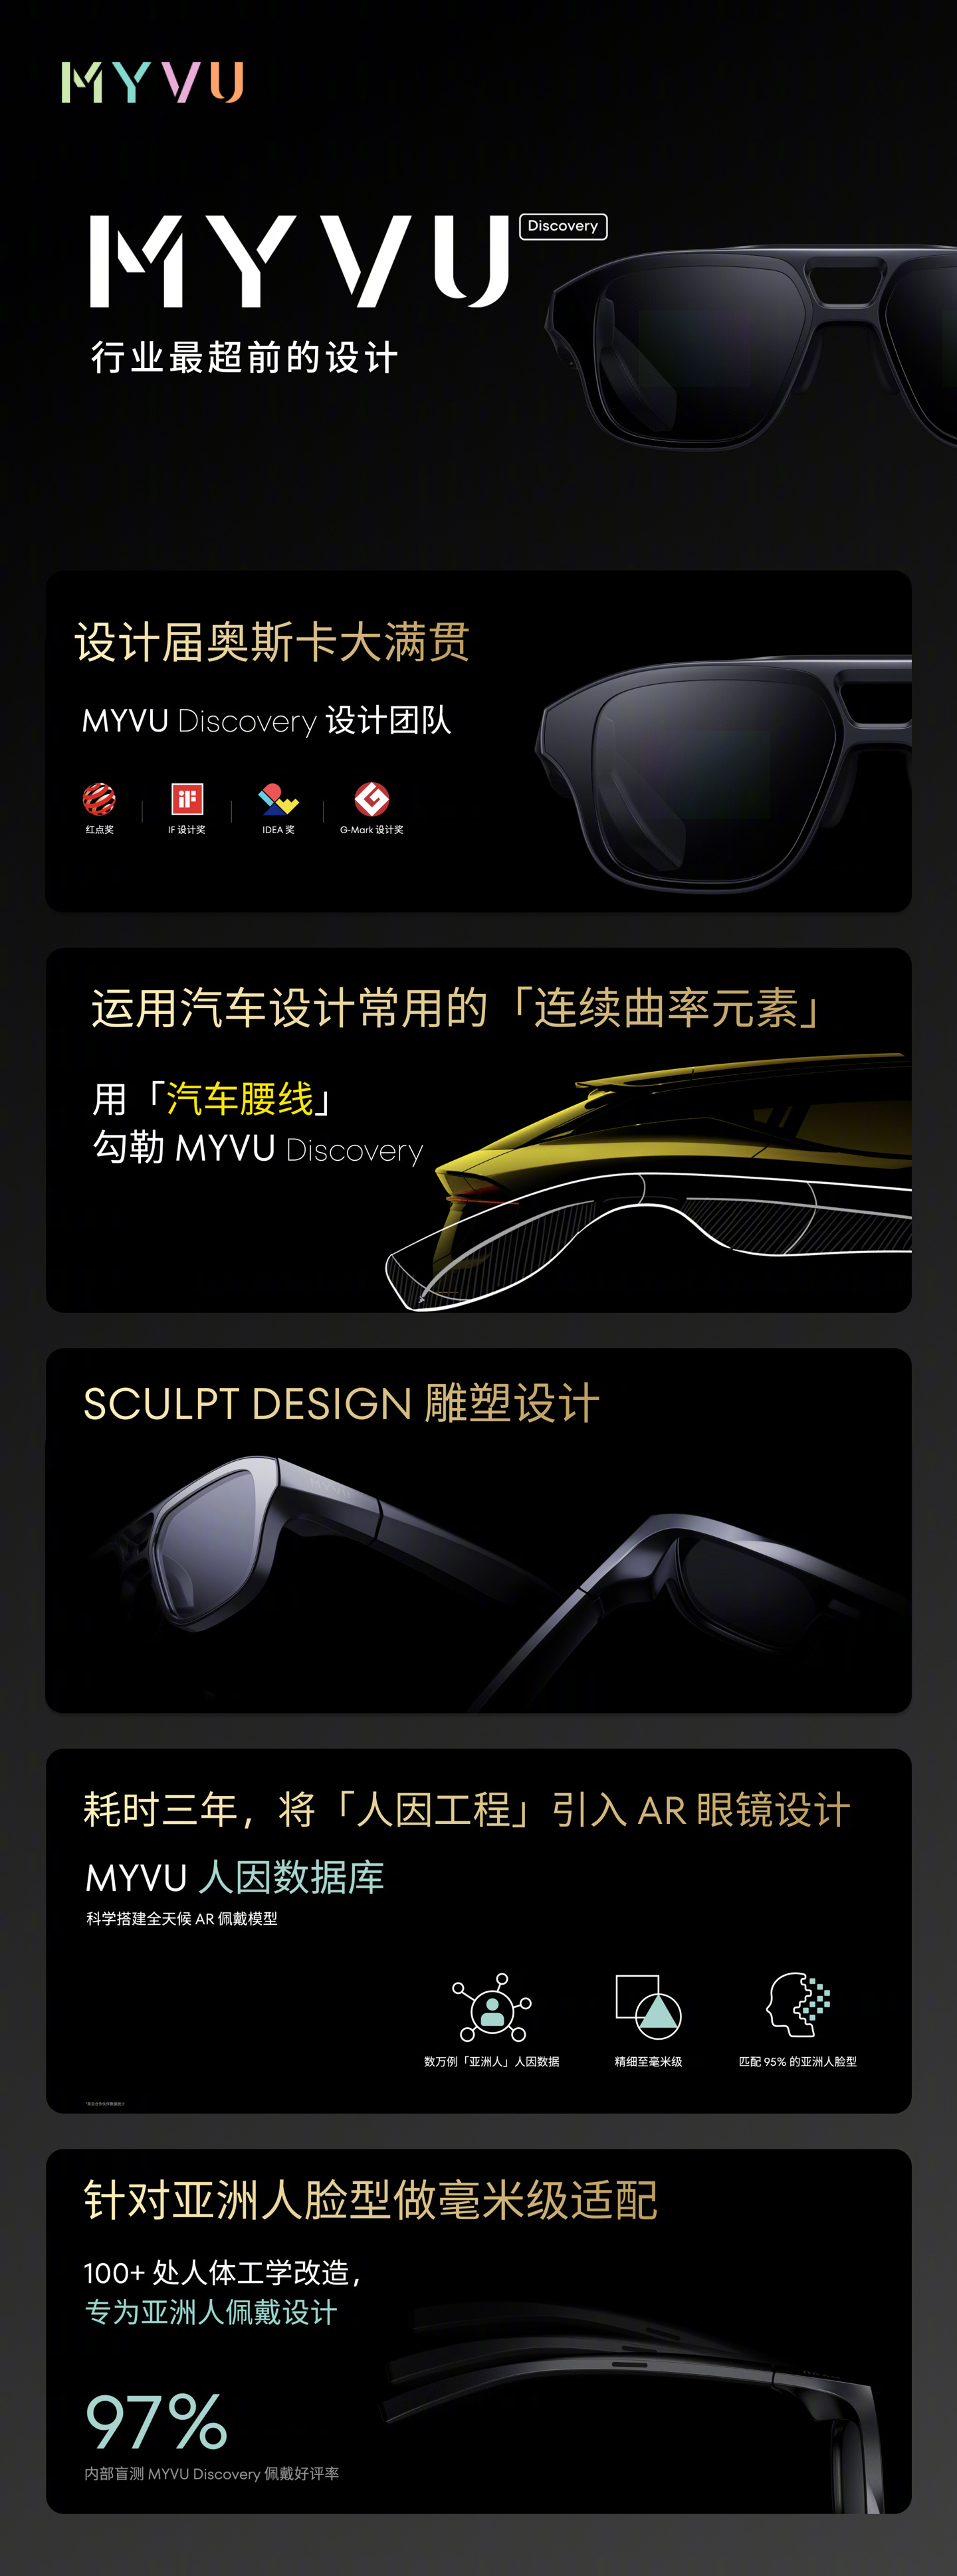 全新品牌MYVU发布，致力于打造适合全天候佩戴的AR智能眼镜